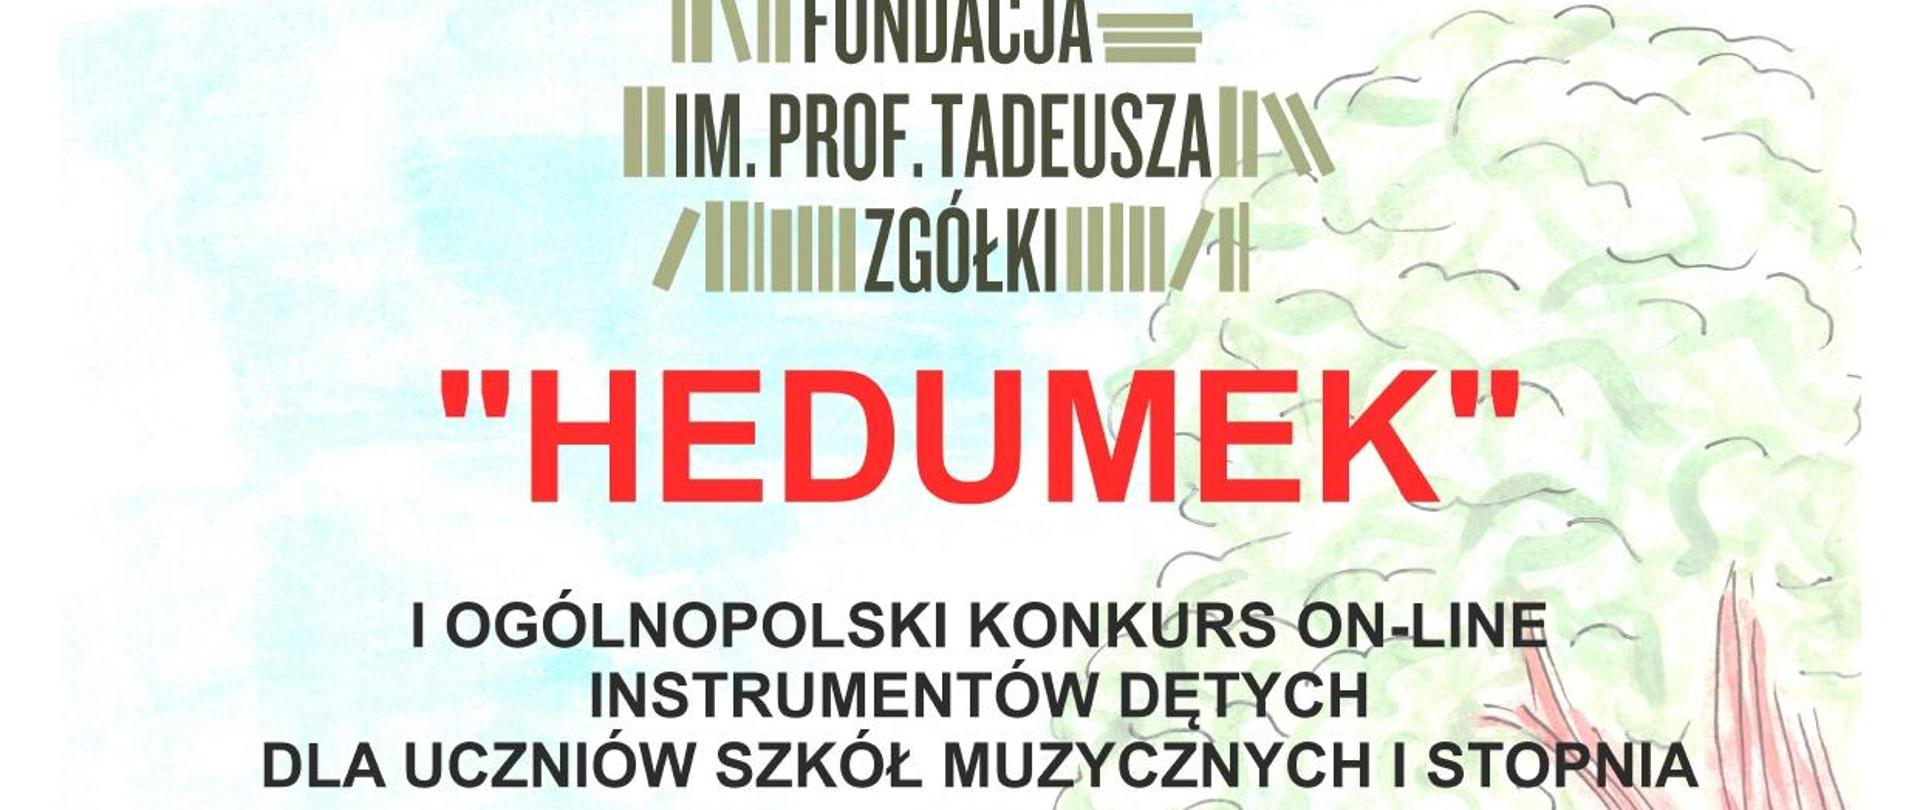 Hedumek - Ogólnopolski konkurs on-line instrumentów dętych dla uczniów szkół muzycznych I stopnia